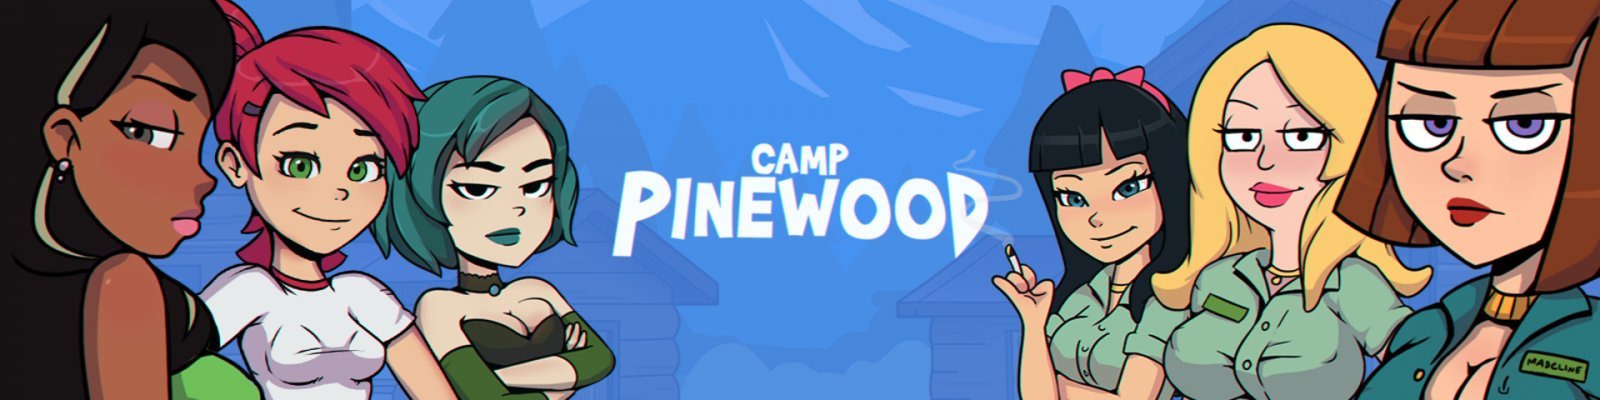 Camp Pinewood [VaultMan] Adult xxx Game Download